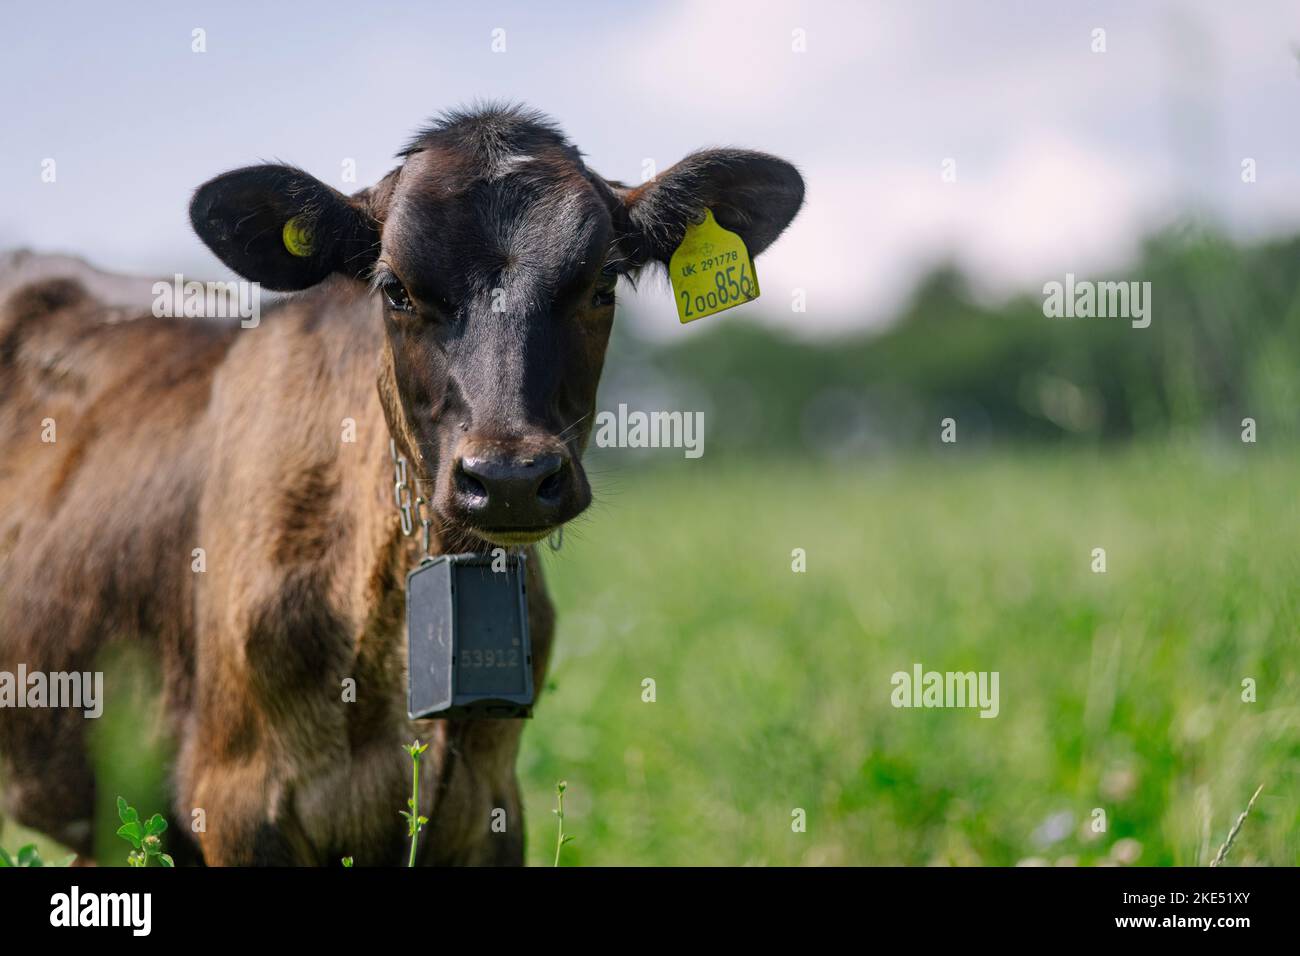 Rinder und Kühe, die Nofence-Halsbänder tragen, ein System, das es ermöglicht, Rinder mit einem harmlosen Halsbandsystem zu kontrollieren. Stockfoto